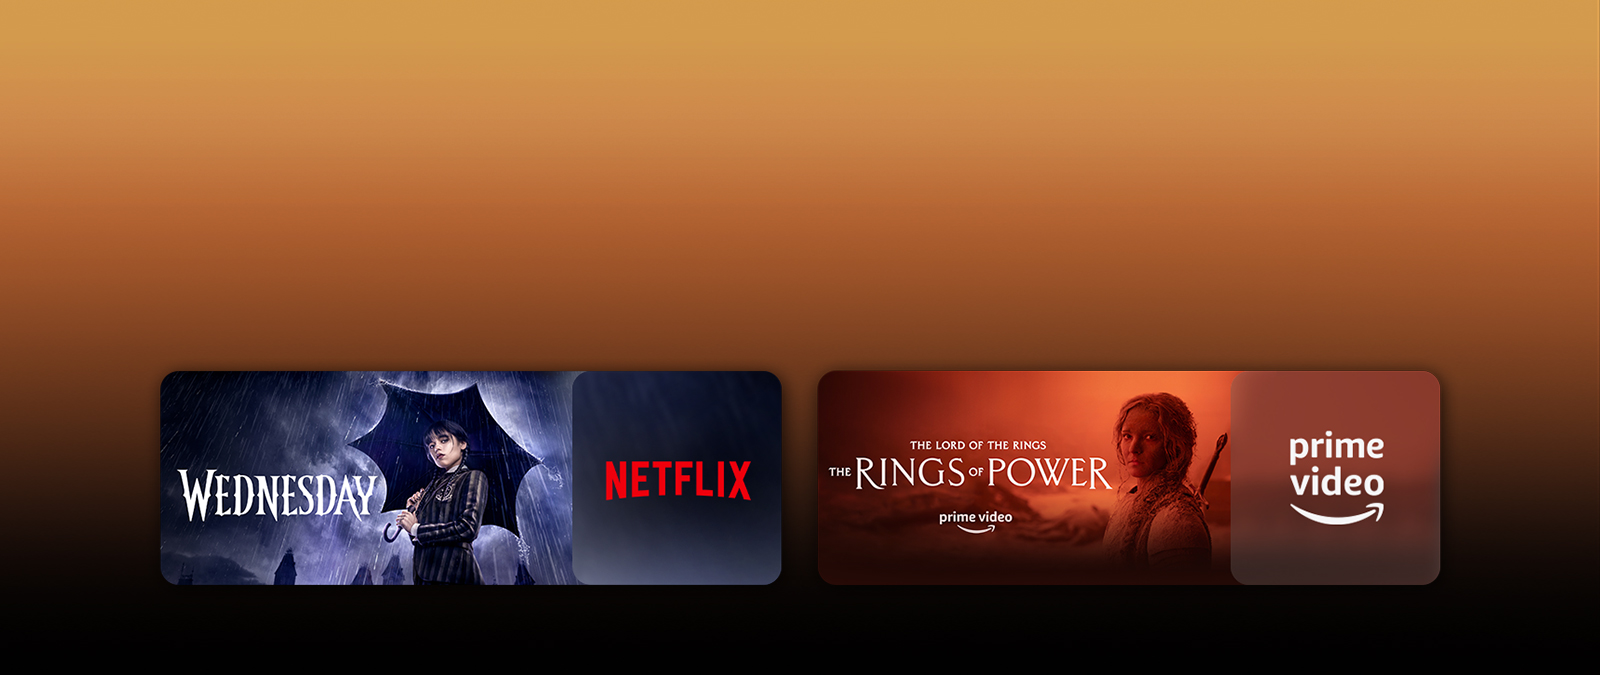 Les logos de plateformes de services de streaming et les séquences correspondantes se trouvent juste à côté de chaque logo. On peut voir des images de Mercredi sur Netflix et du Seigneur des Anneaux : Les Anneaux de Pouvoir sur PRIME VIDEO.